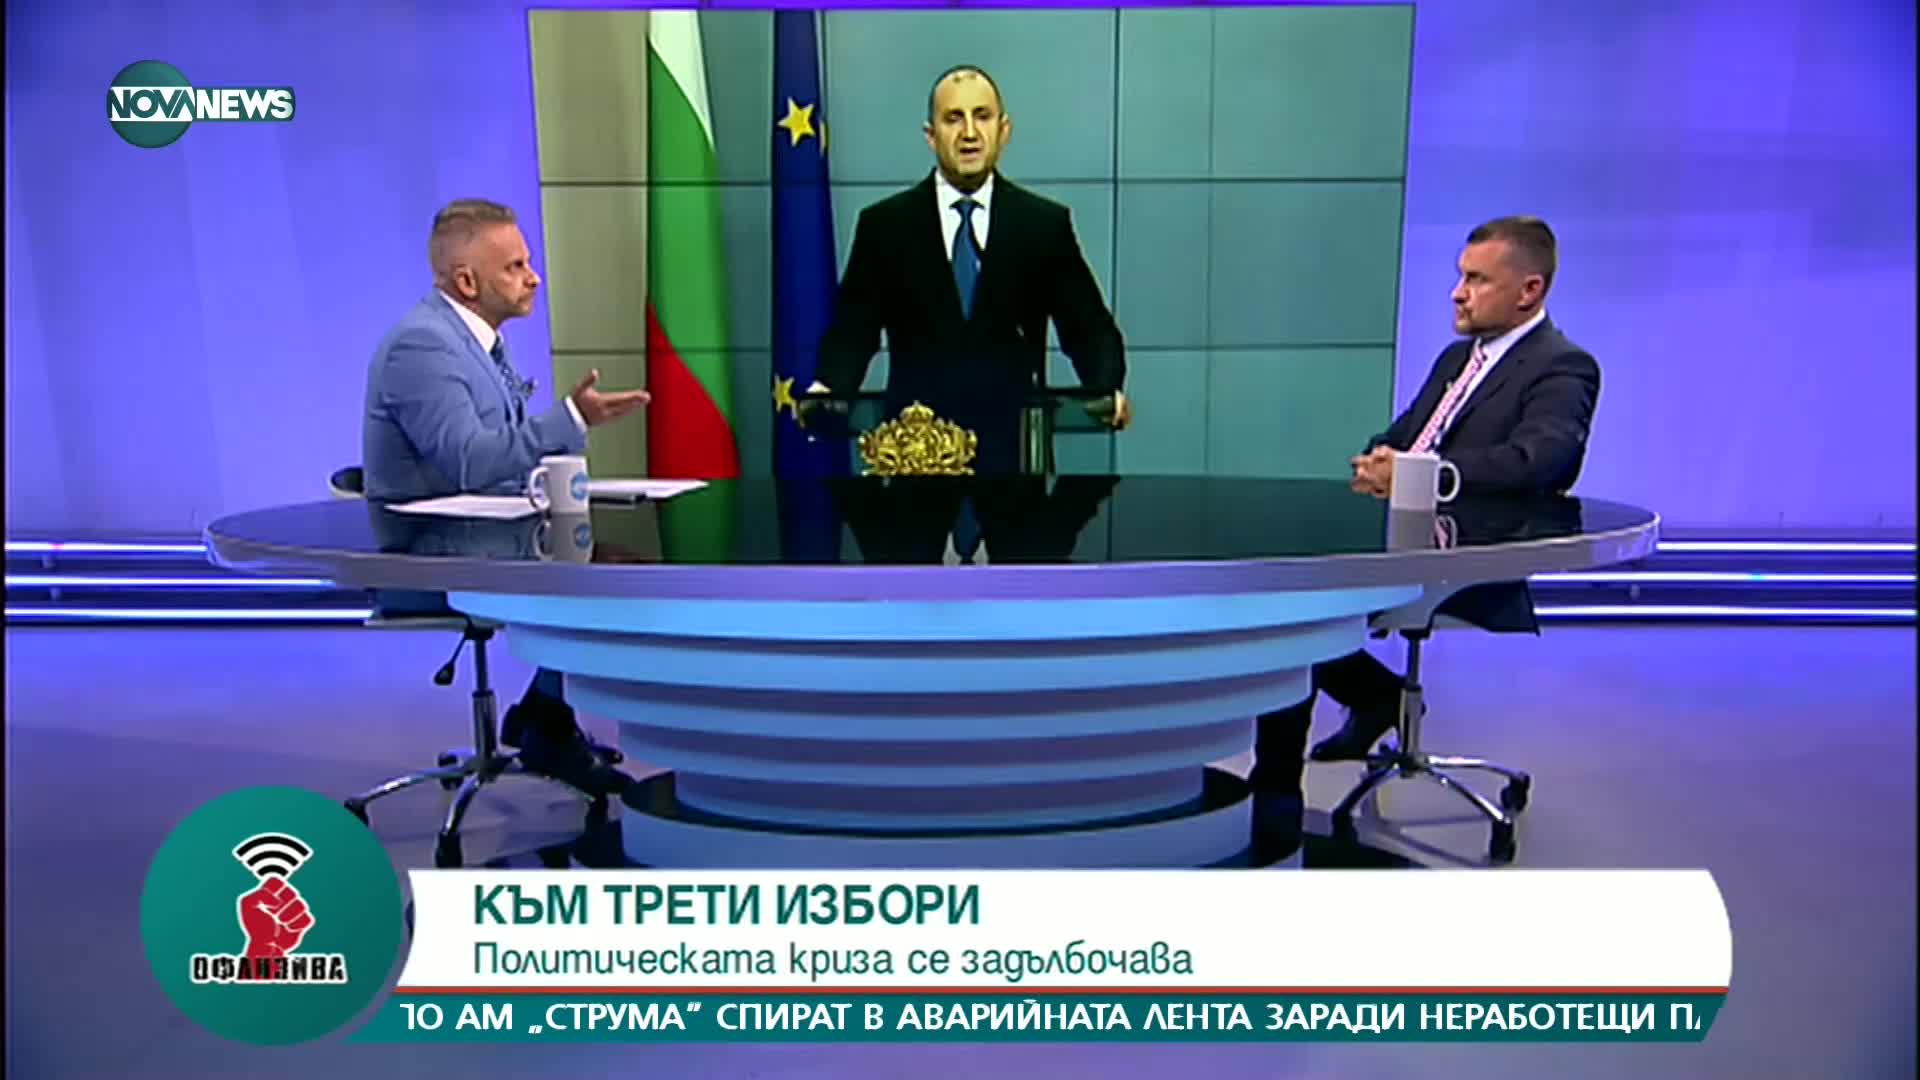 Калоян Методиев: Формиране на партия около Кирил Петков вреди на "Демократична България"